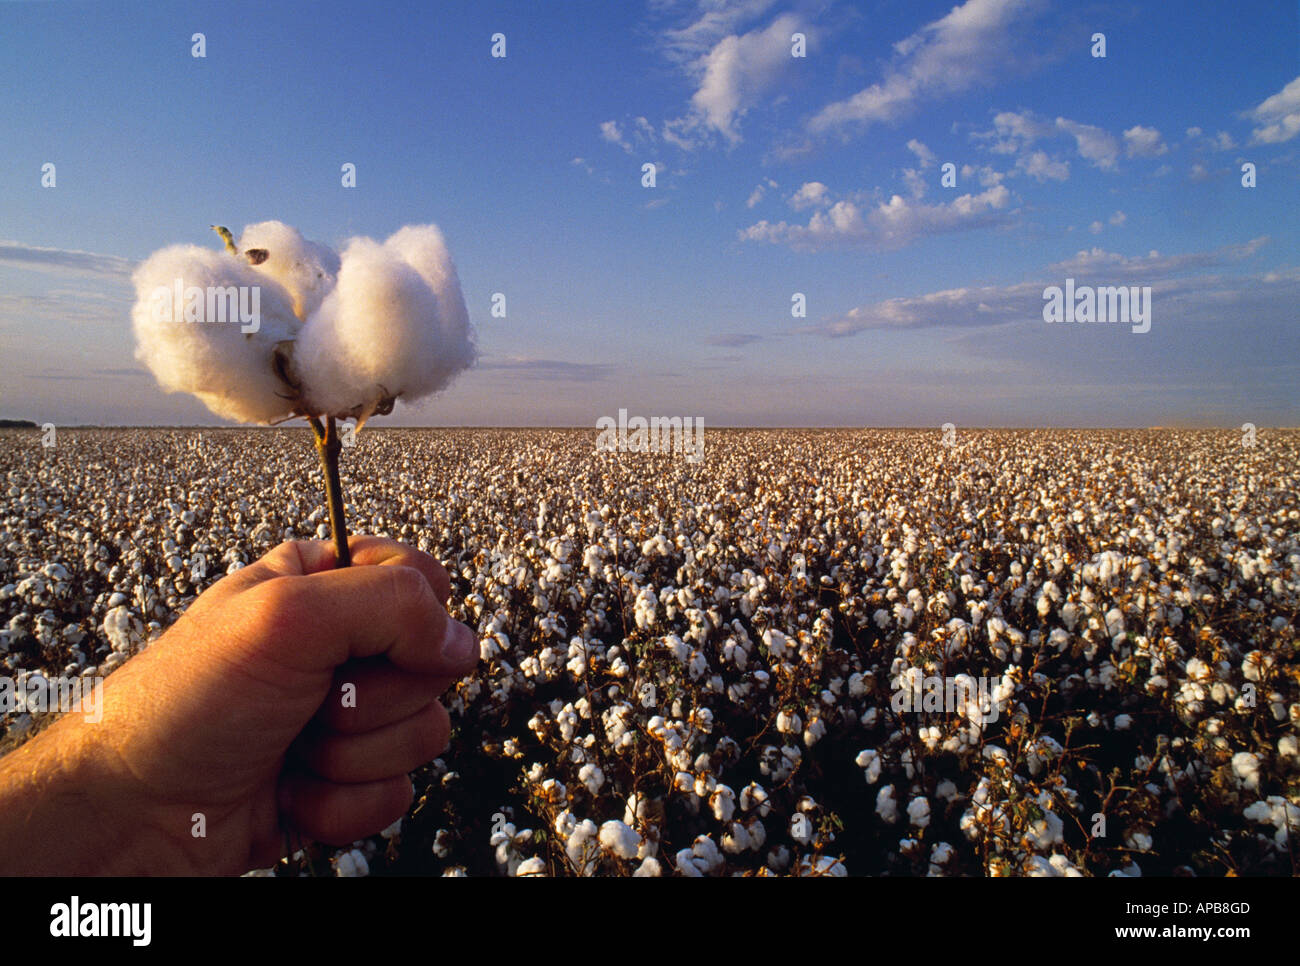 Landwirtschaft - Hand, die eine Reife Baumwolle Boll mit einer Reife, Ernte bereit Baumwollfeld im Hintergrund / Kalifornien, USA. Stockfoto